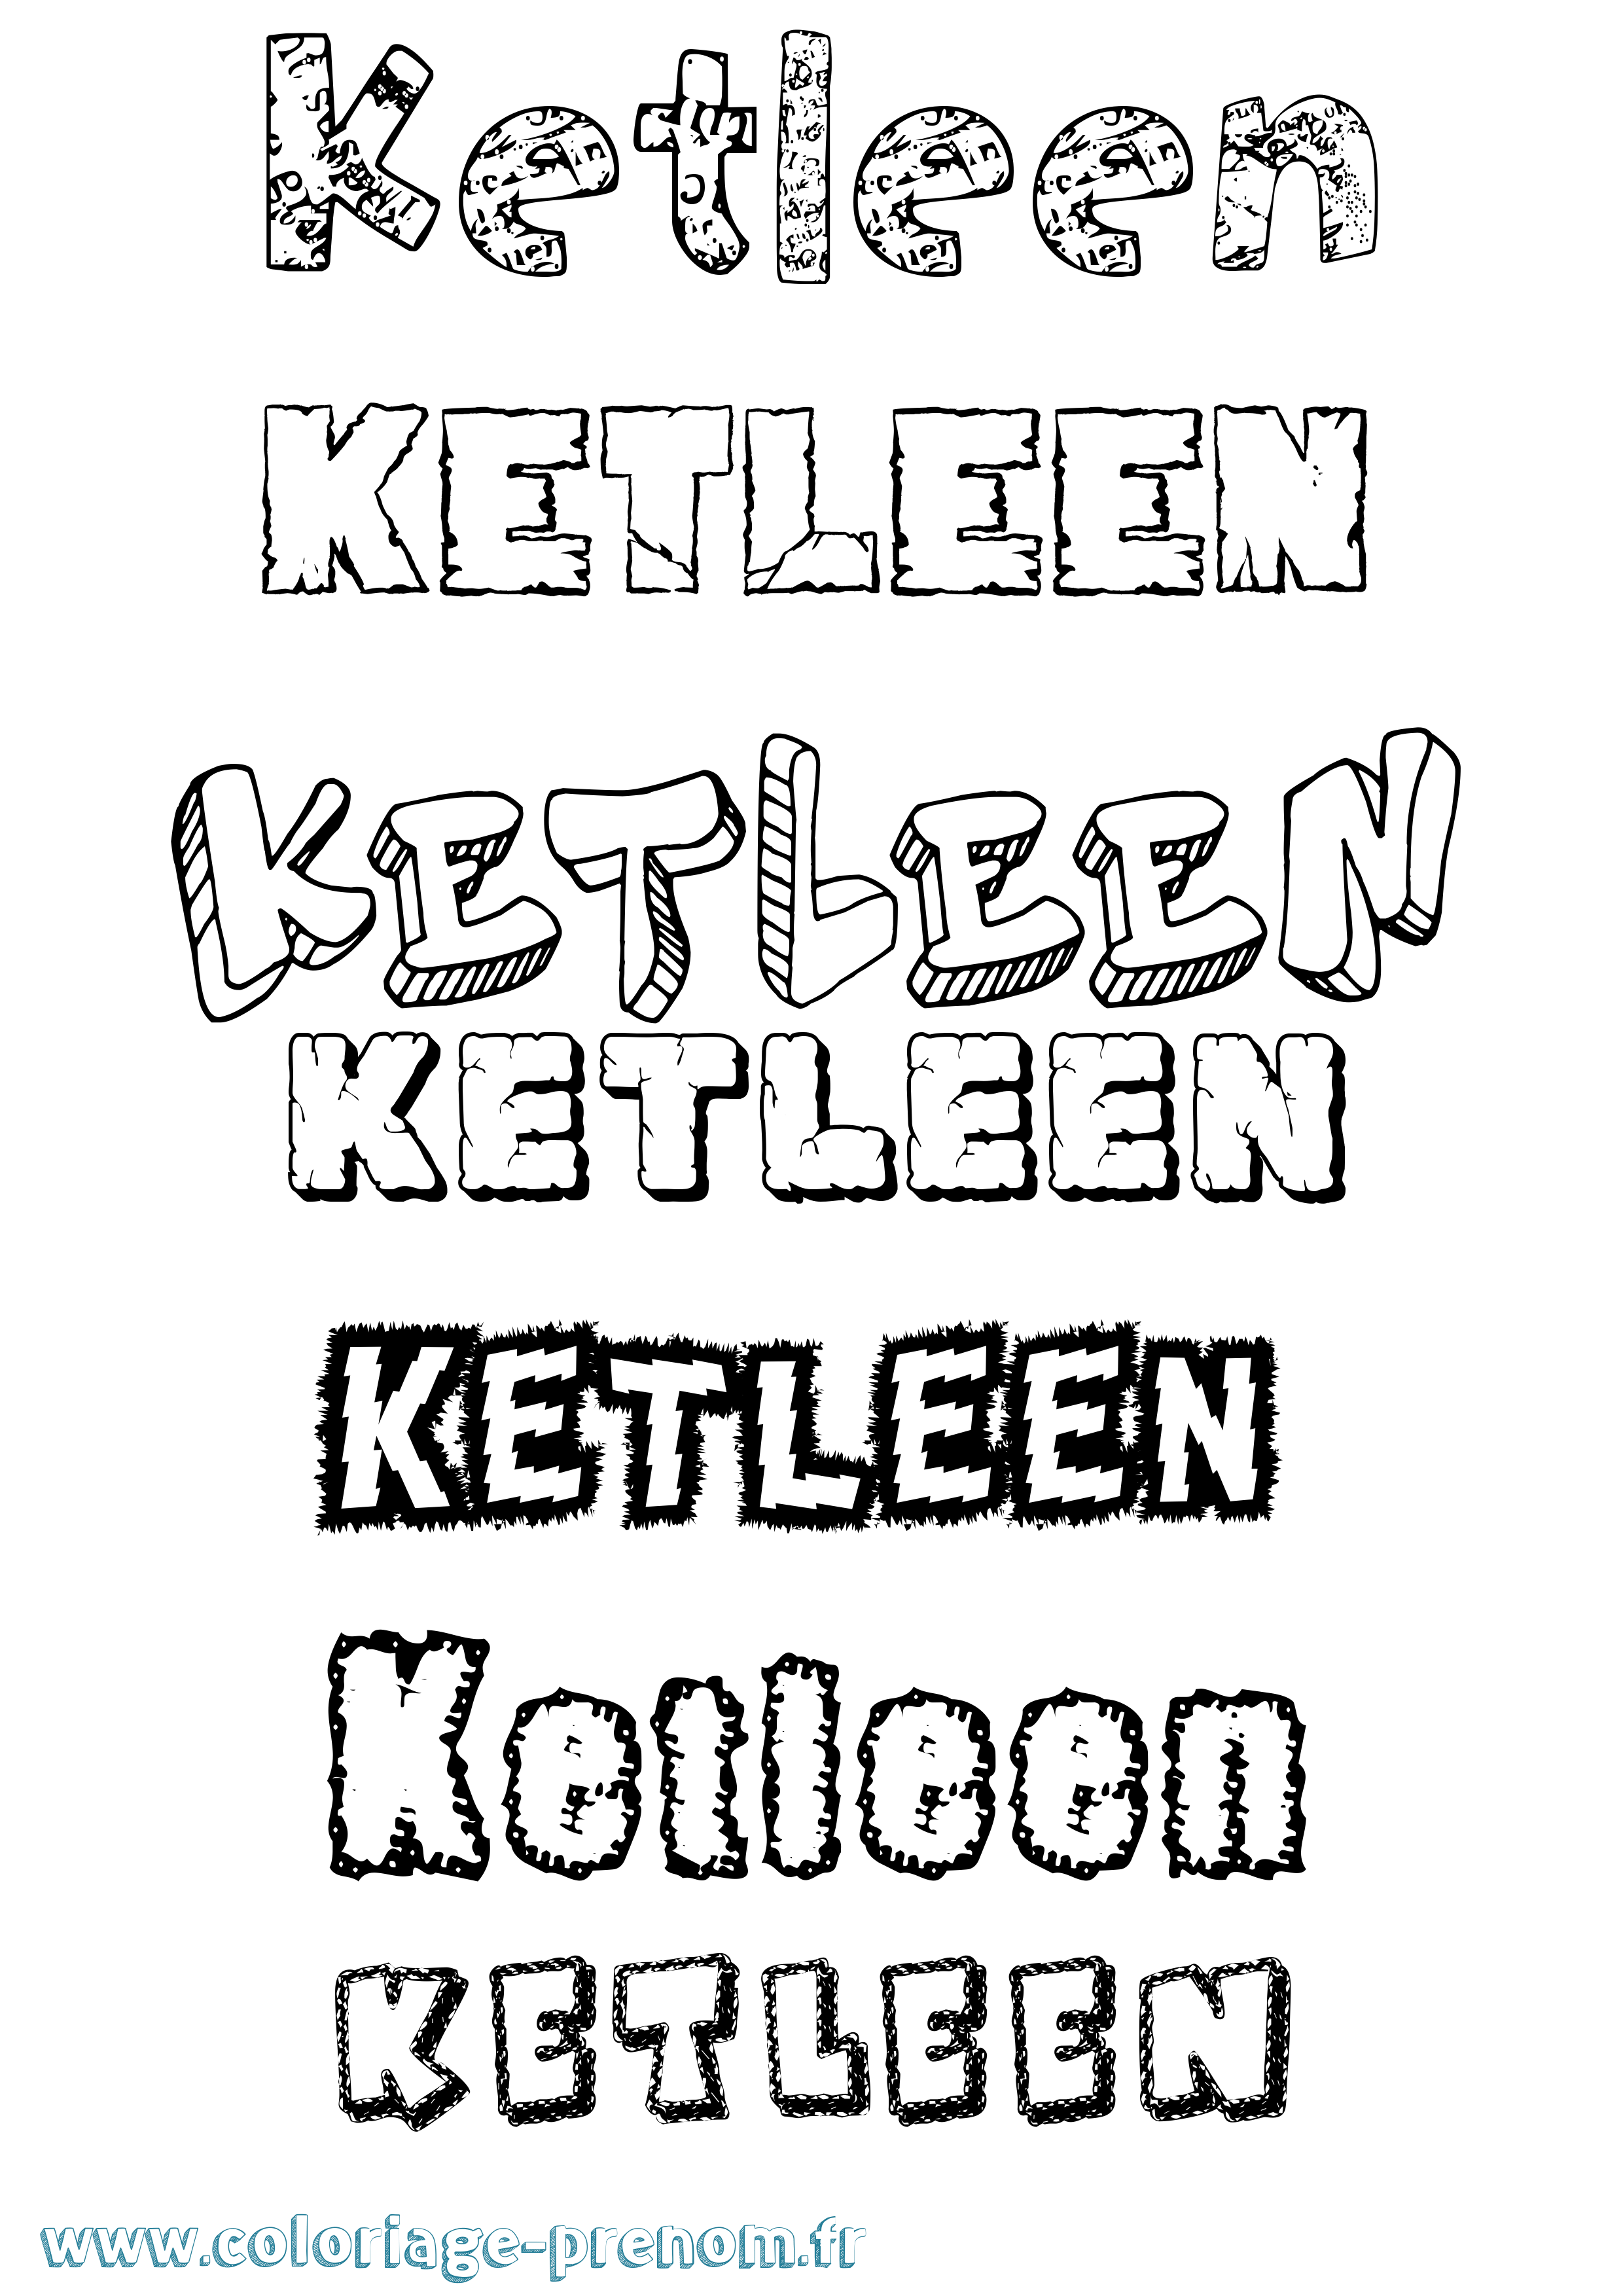 Coloriage prénom Ketleen Destructuré